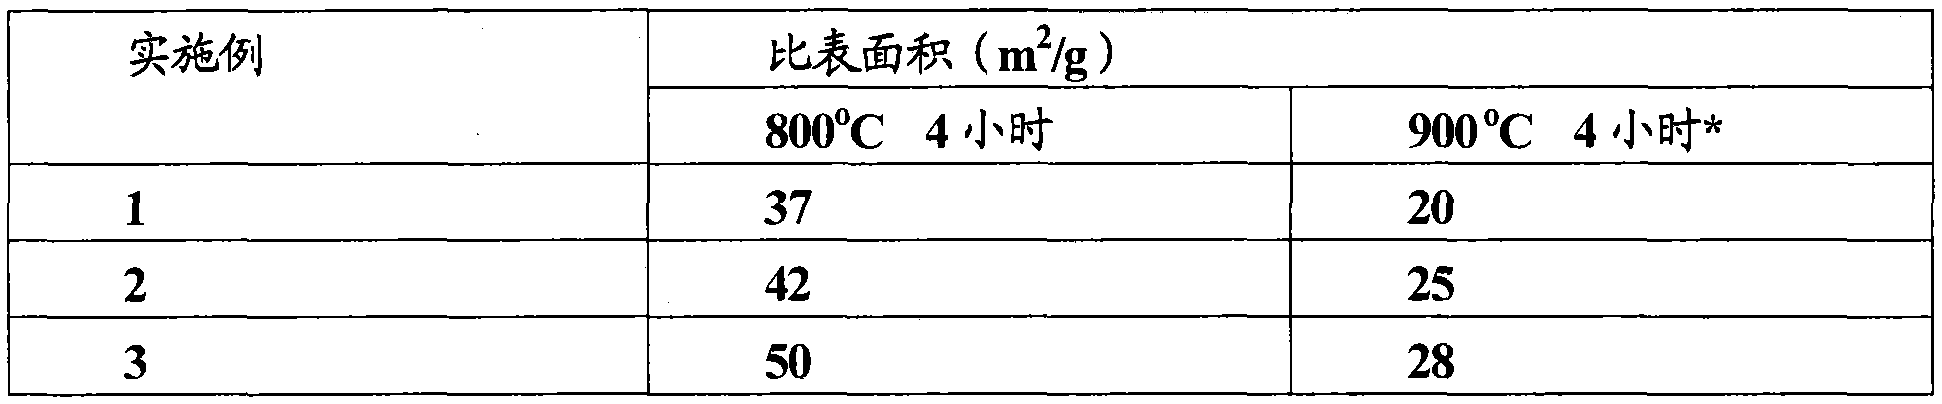 Method for treating gas containing nitrogen oxides (NOx), using composition comprising zirconium, cerium and niobium as catalyst